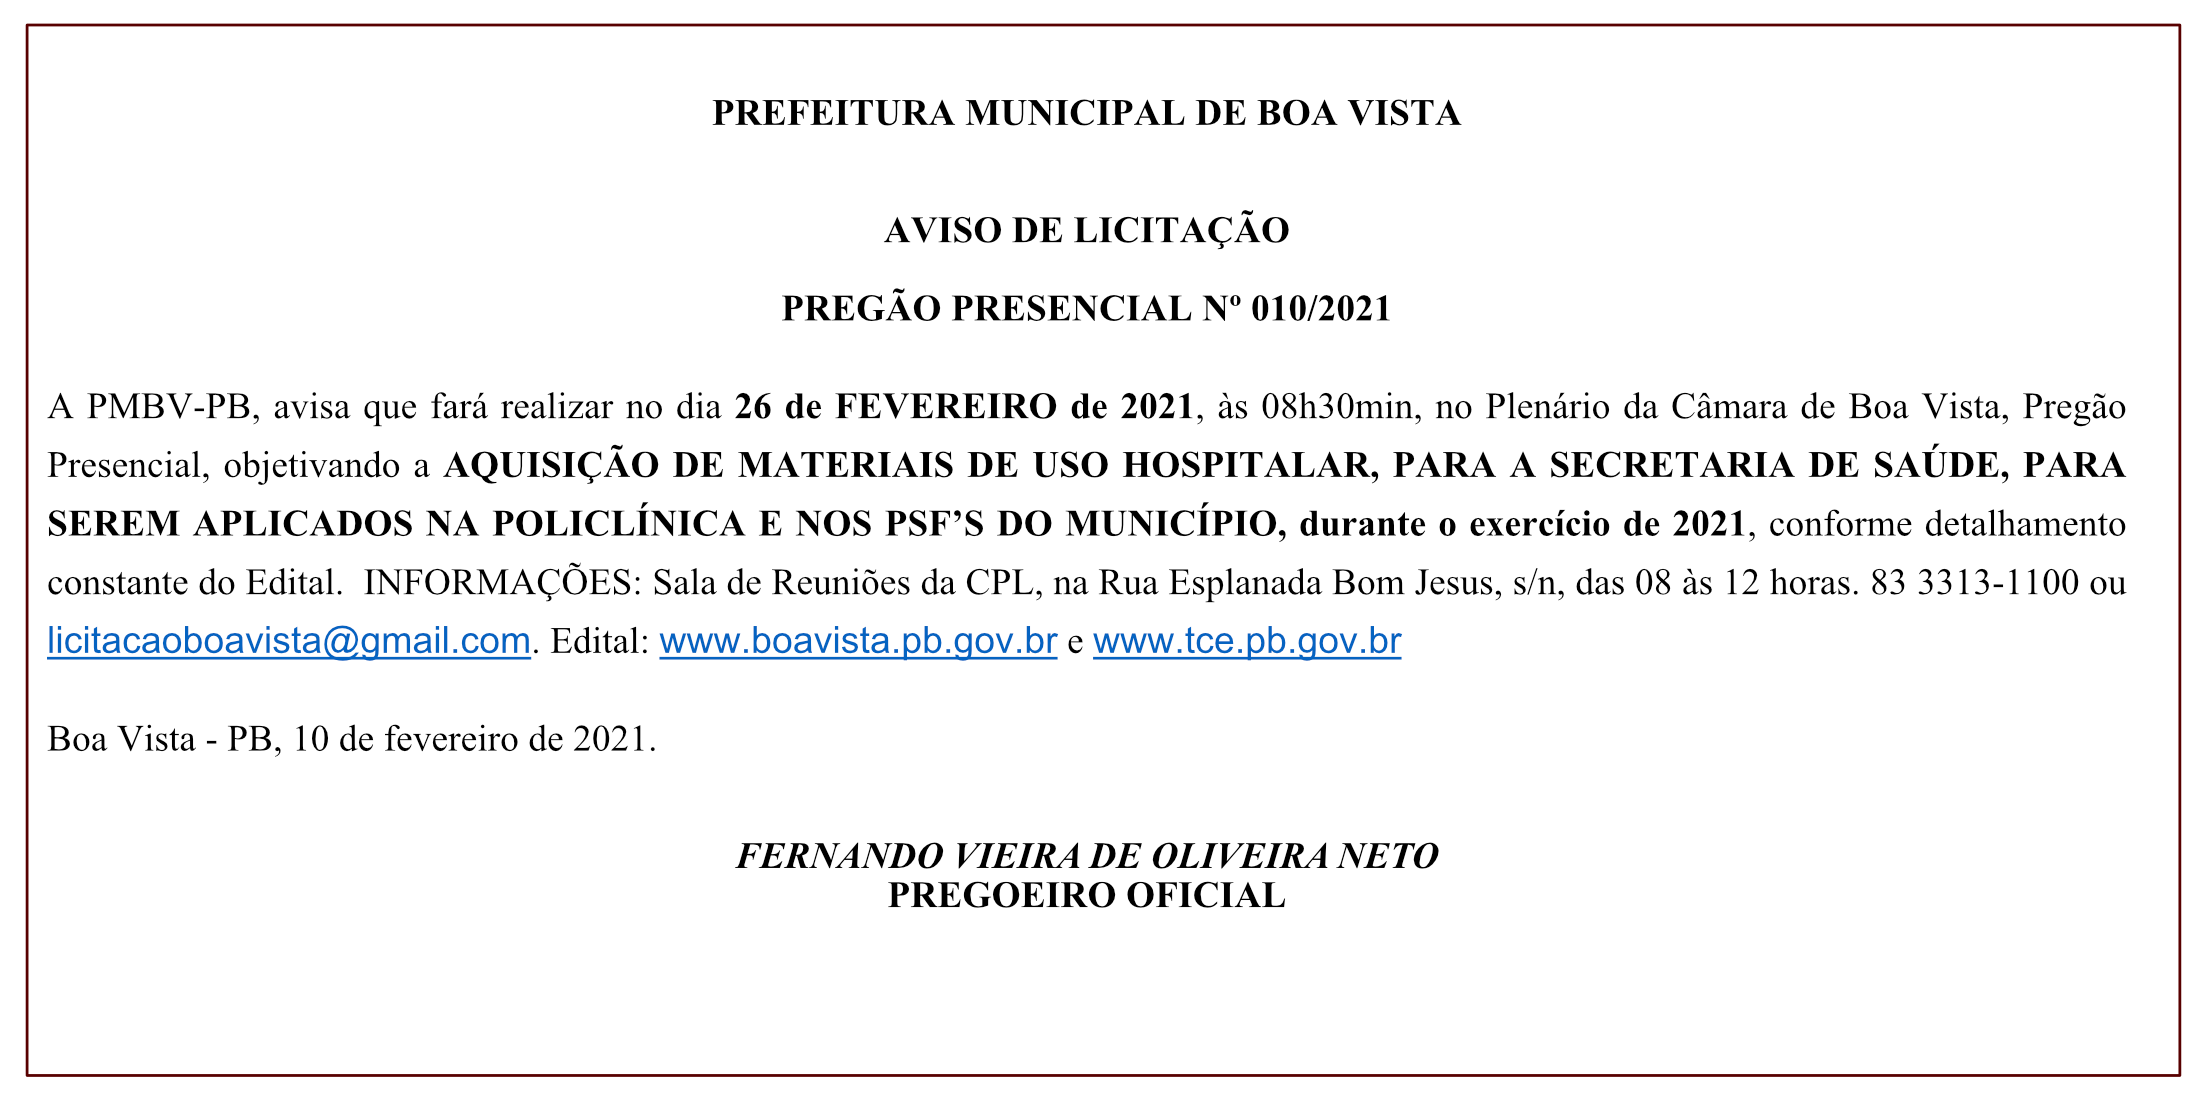 PREFEITURA MUNICIPAL DE BOA VISTA – AVISO DE LICITAÇÃO – PREGÃO PRESENCIAL Nº 010/2021